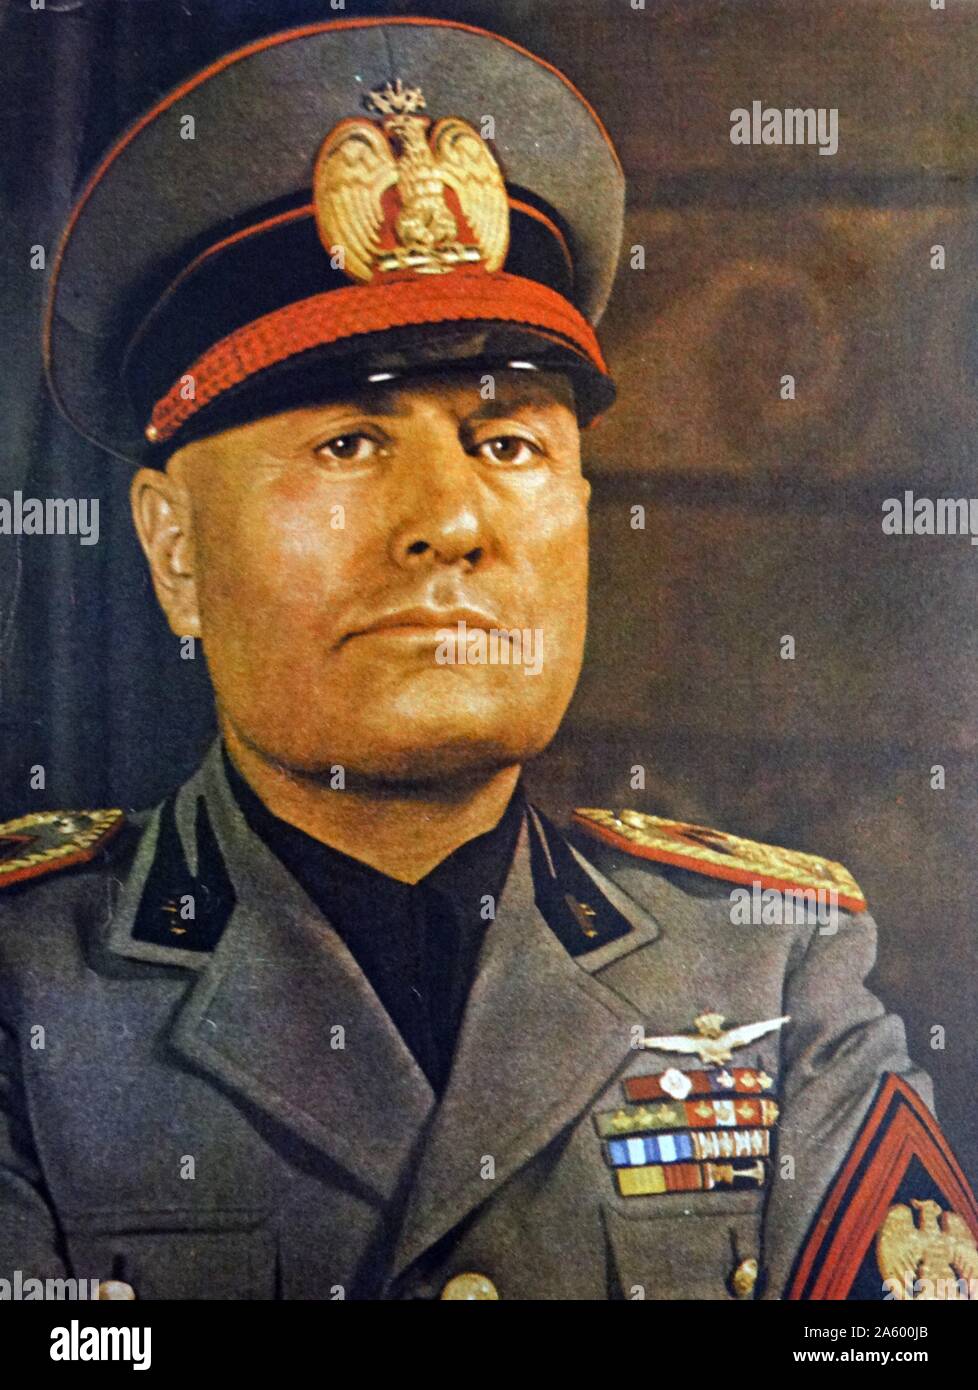 1930 portrait en uniforme de Benito Mussolini (1883 - 28 avril 1945). L'italien, homme politique, journaliste et leader du parti fasciste National. Premier ministre de 1922 jusqu'à son éviction en 1943 Banque D'Images